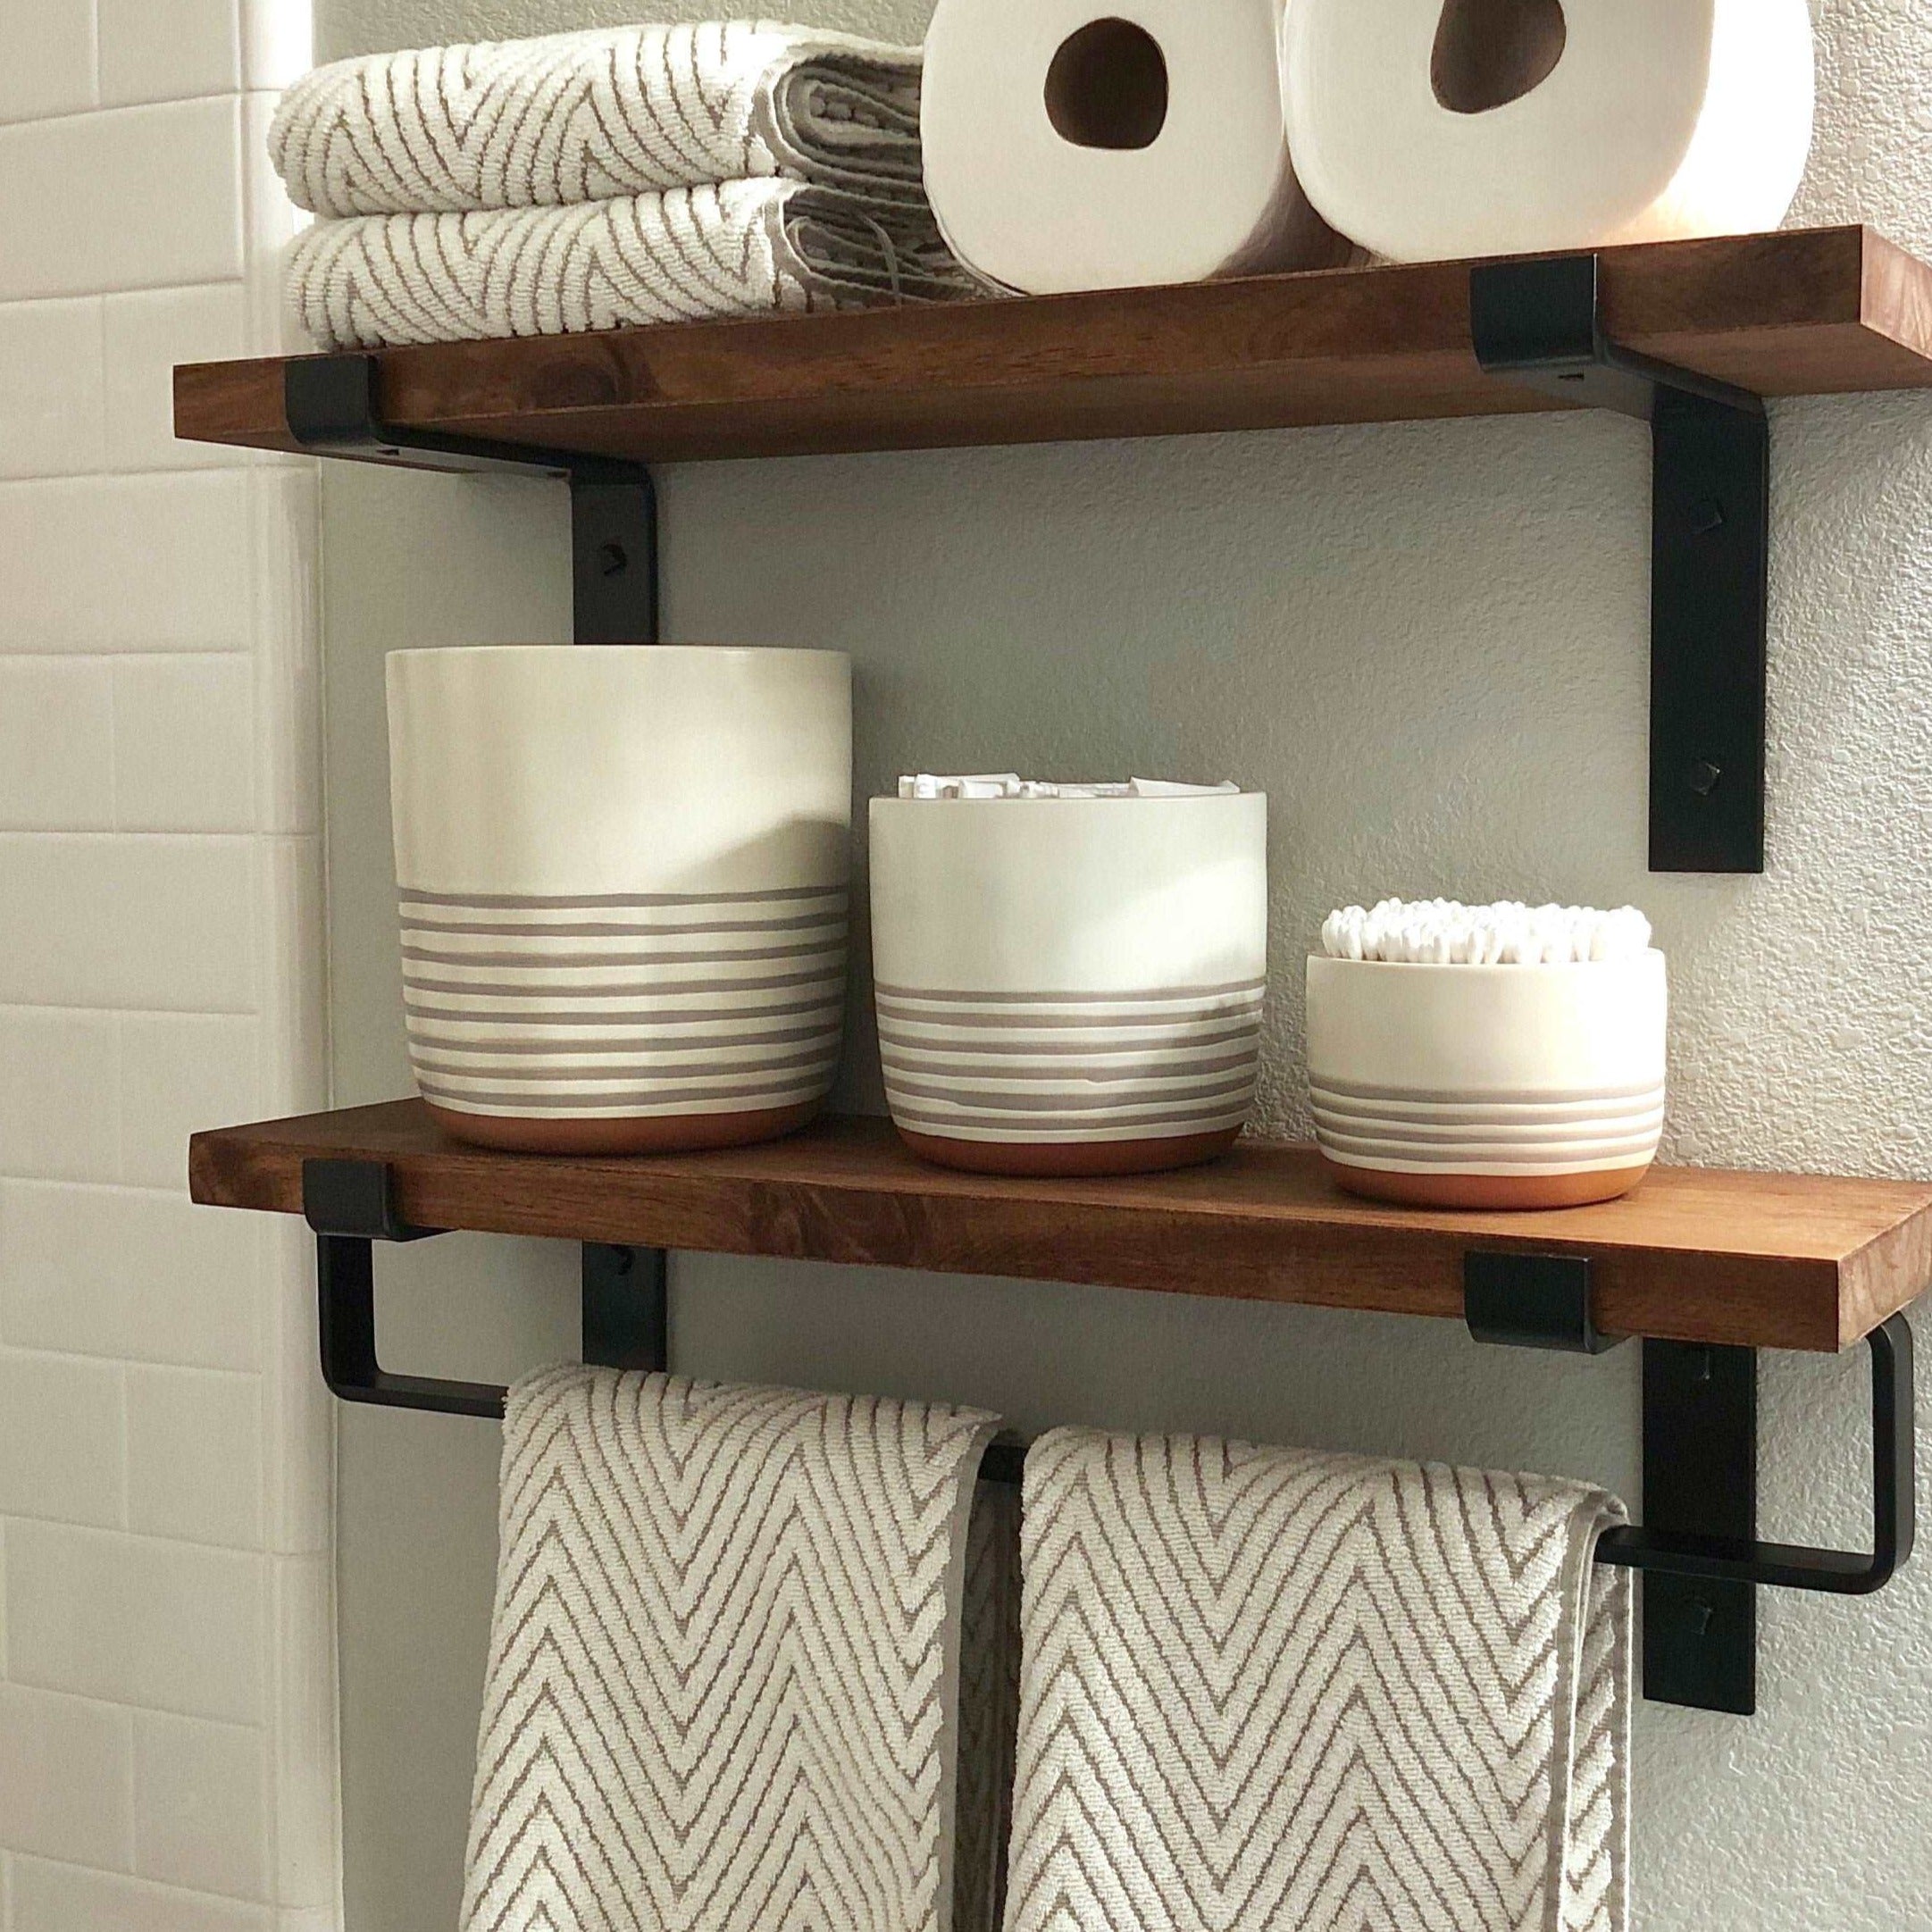 bathroom towel bar under shelf